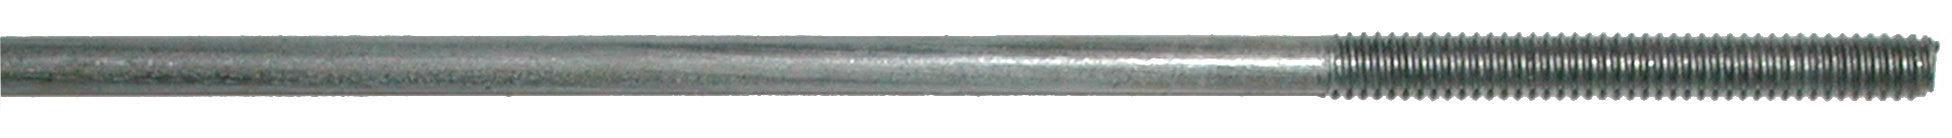 Sullivan Double Threaded 2mm Rod Assortment SLN540